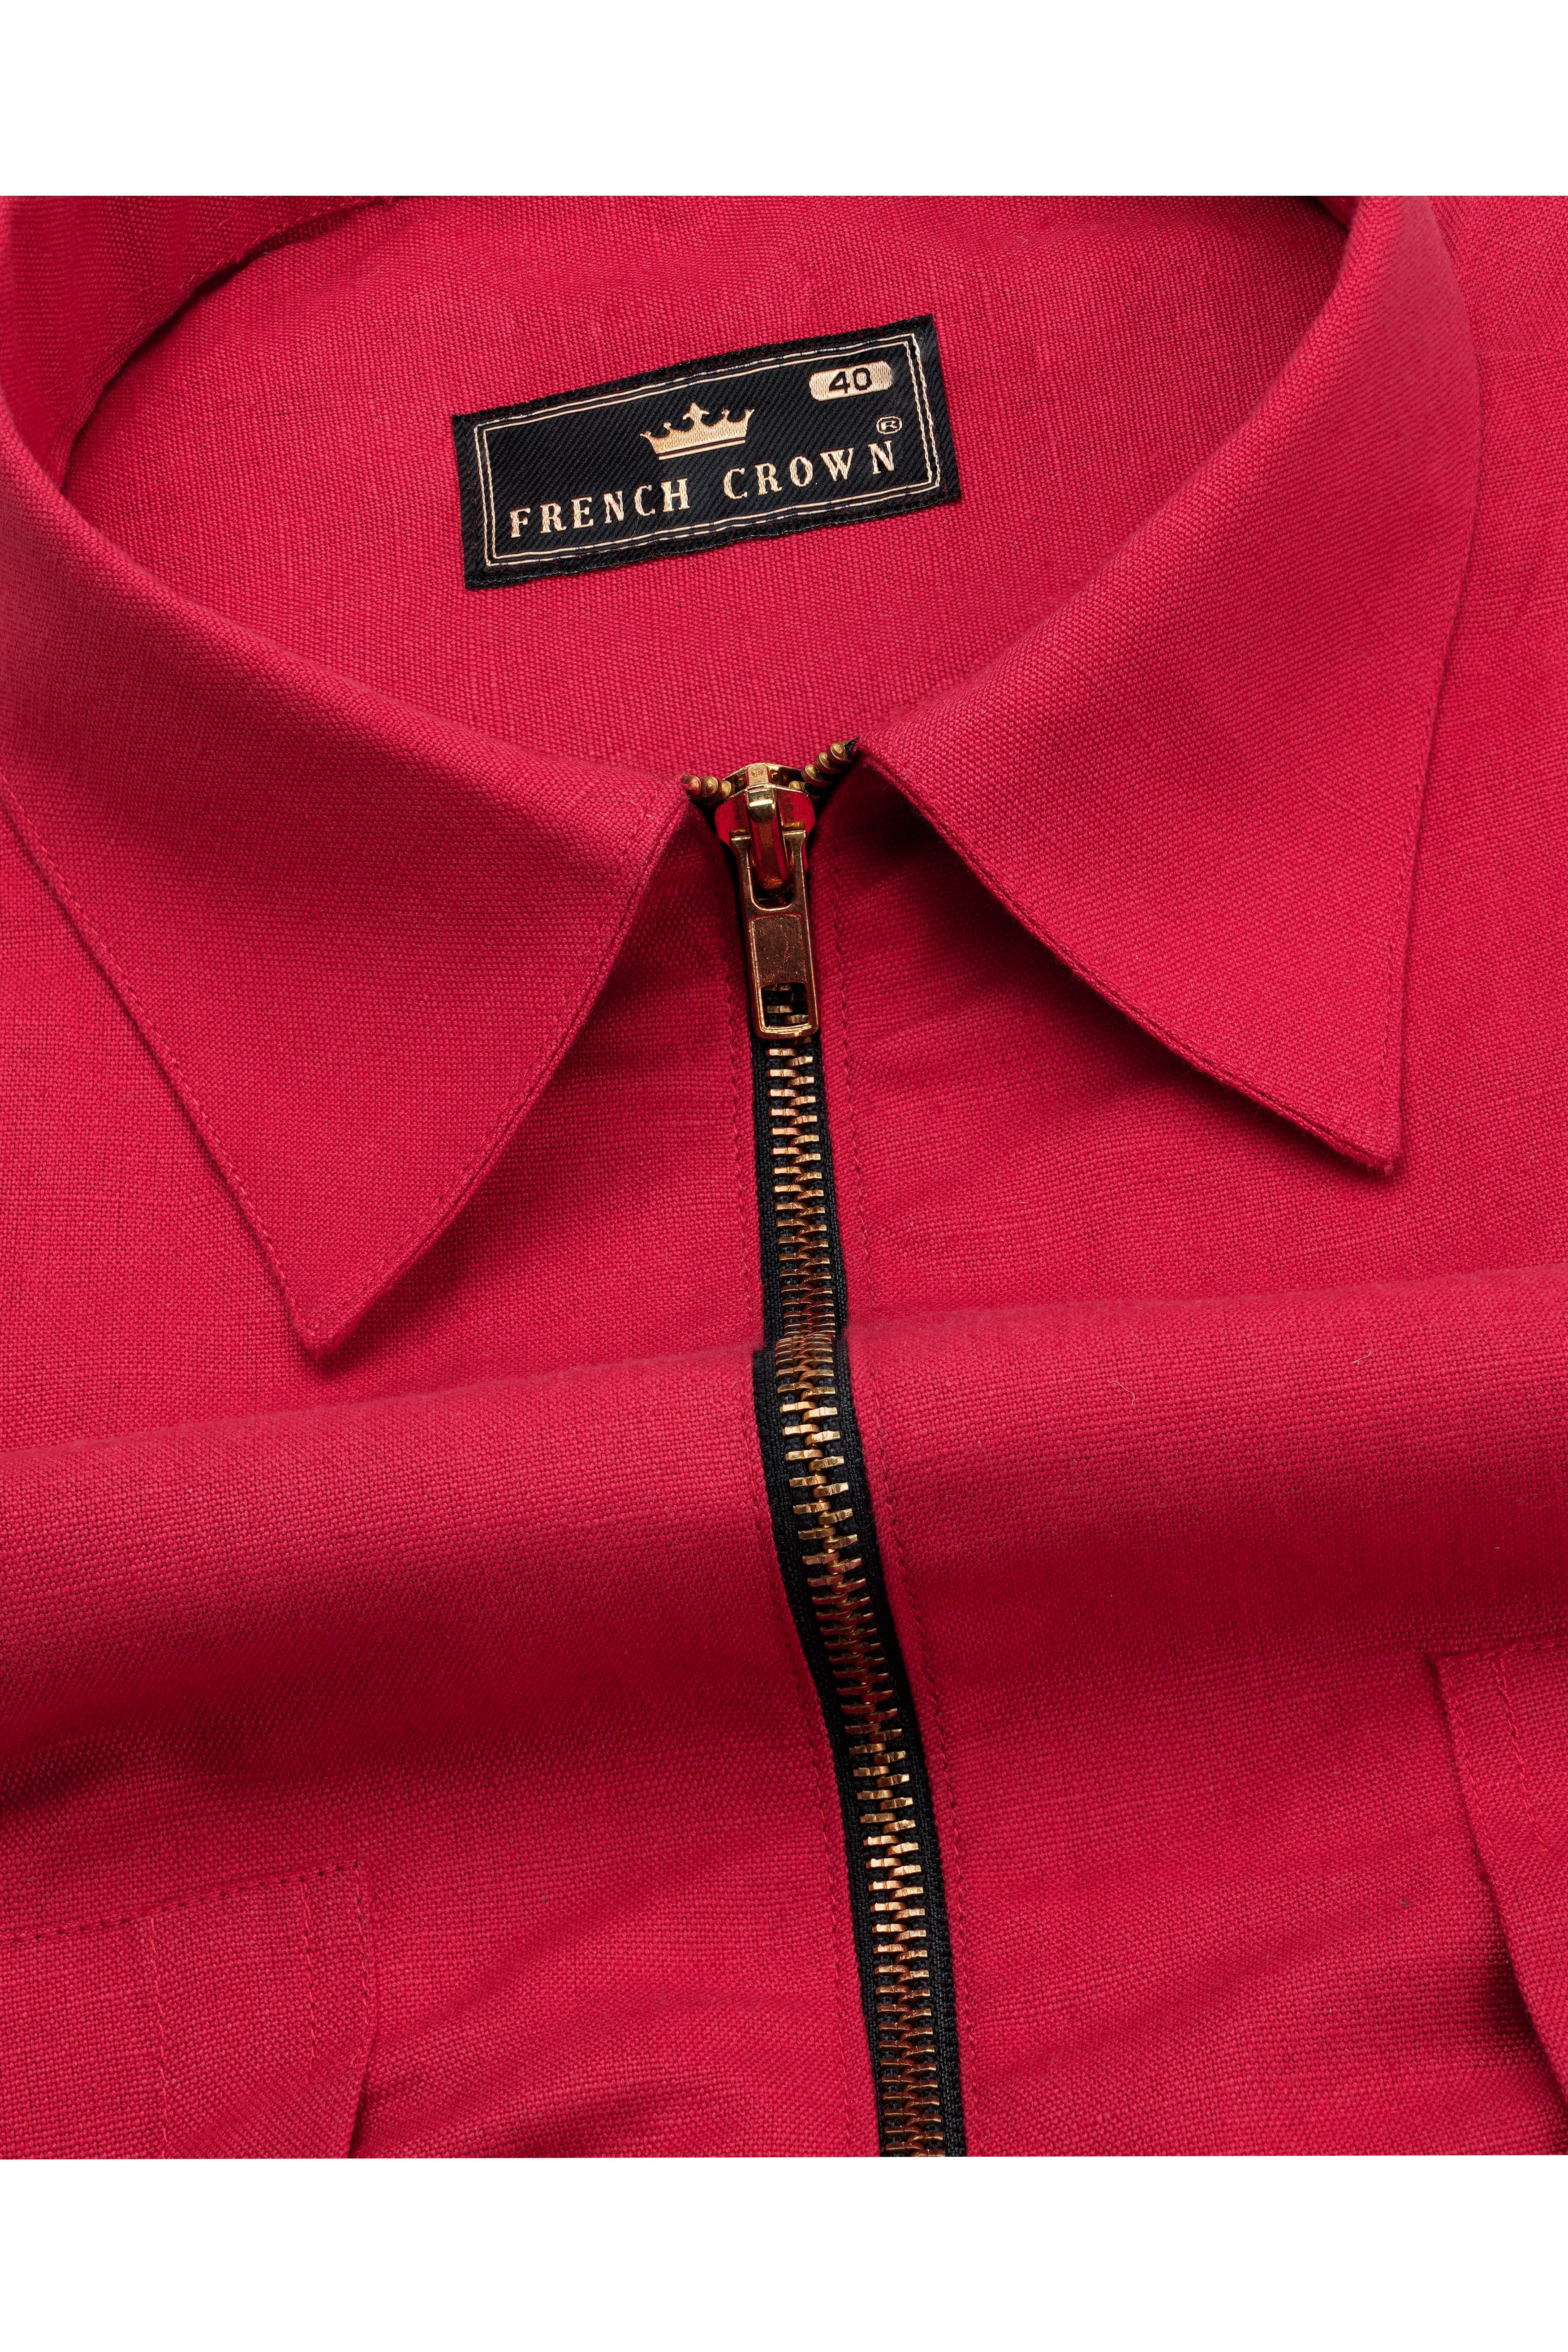 Cardinal Red Linen Textured Premium Cotton Jacket with Metallic Zipper Closer